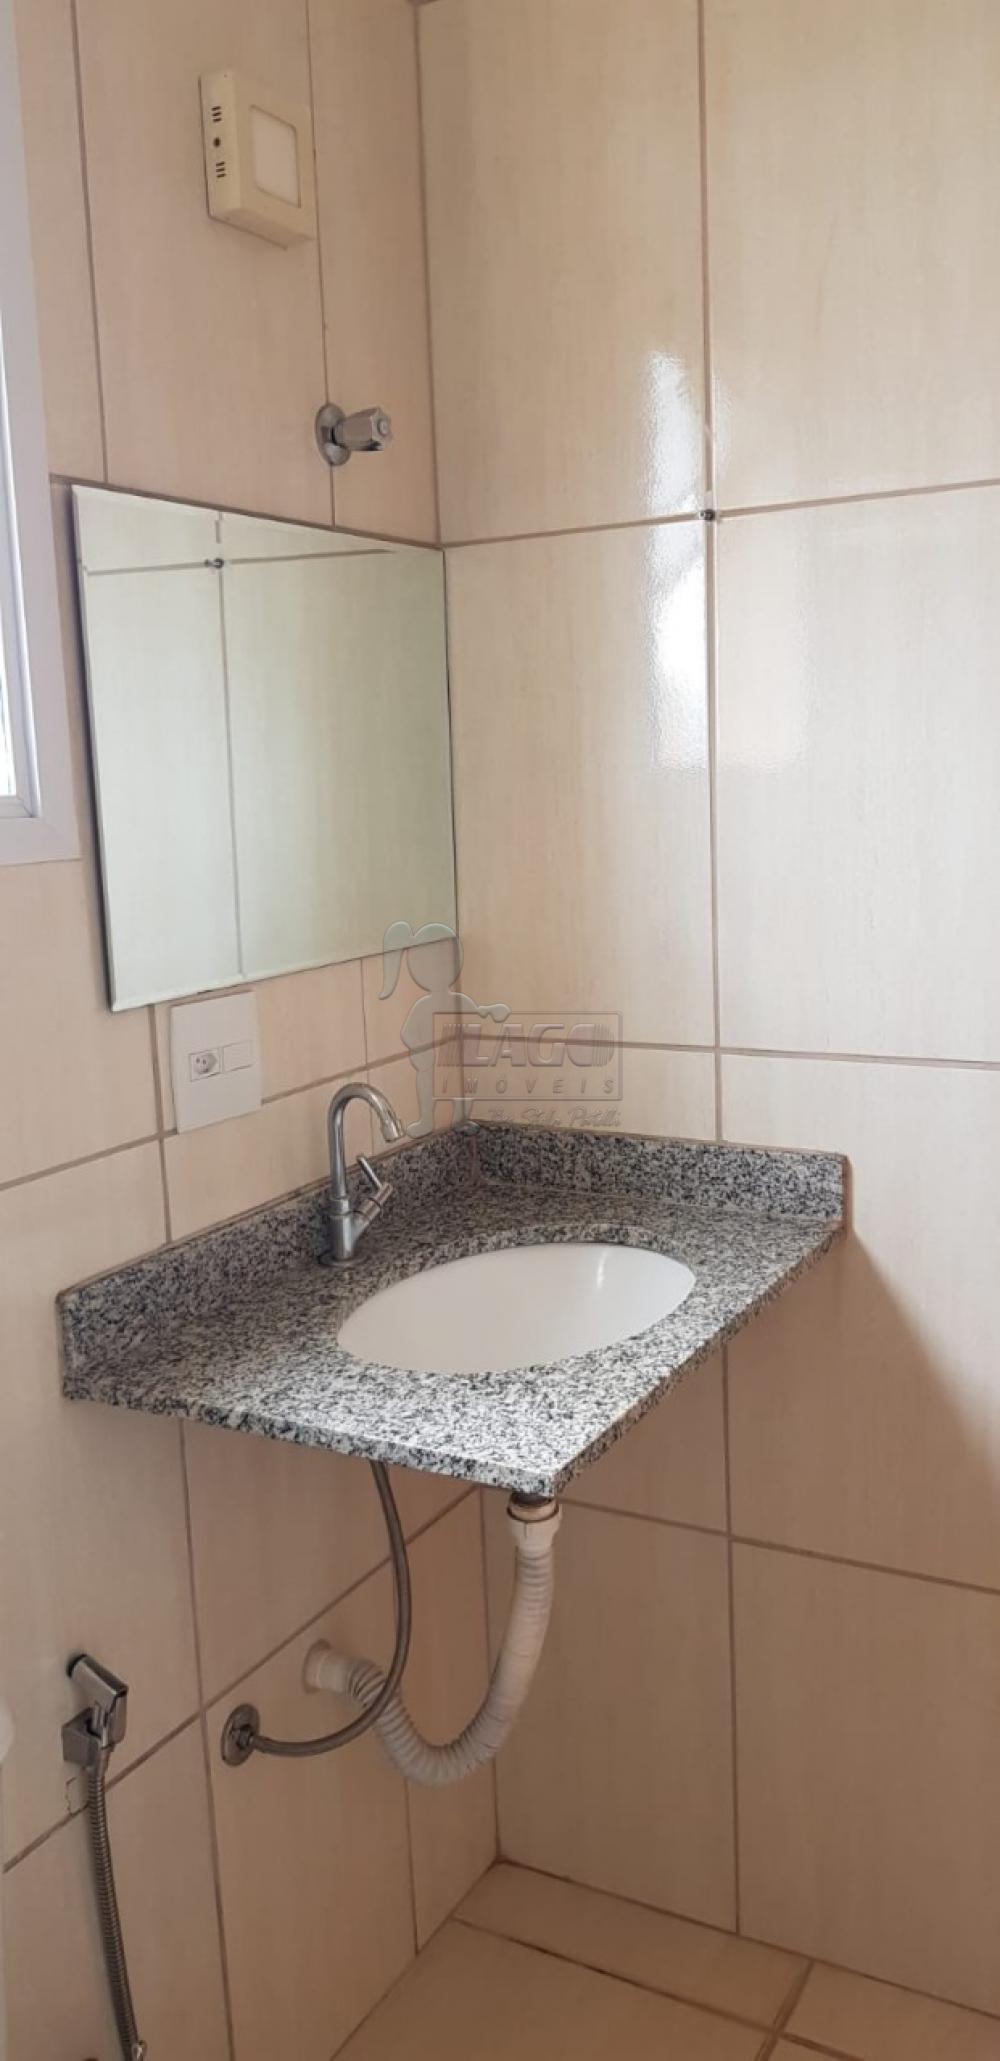 Comprar Apartamentos / Padrão em Ribeirão Preto R$ 135.000,00 - Foto 11